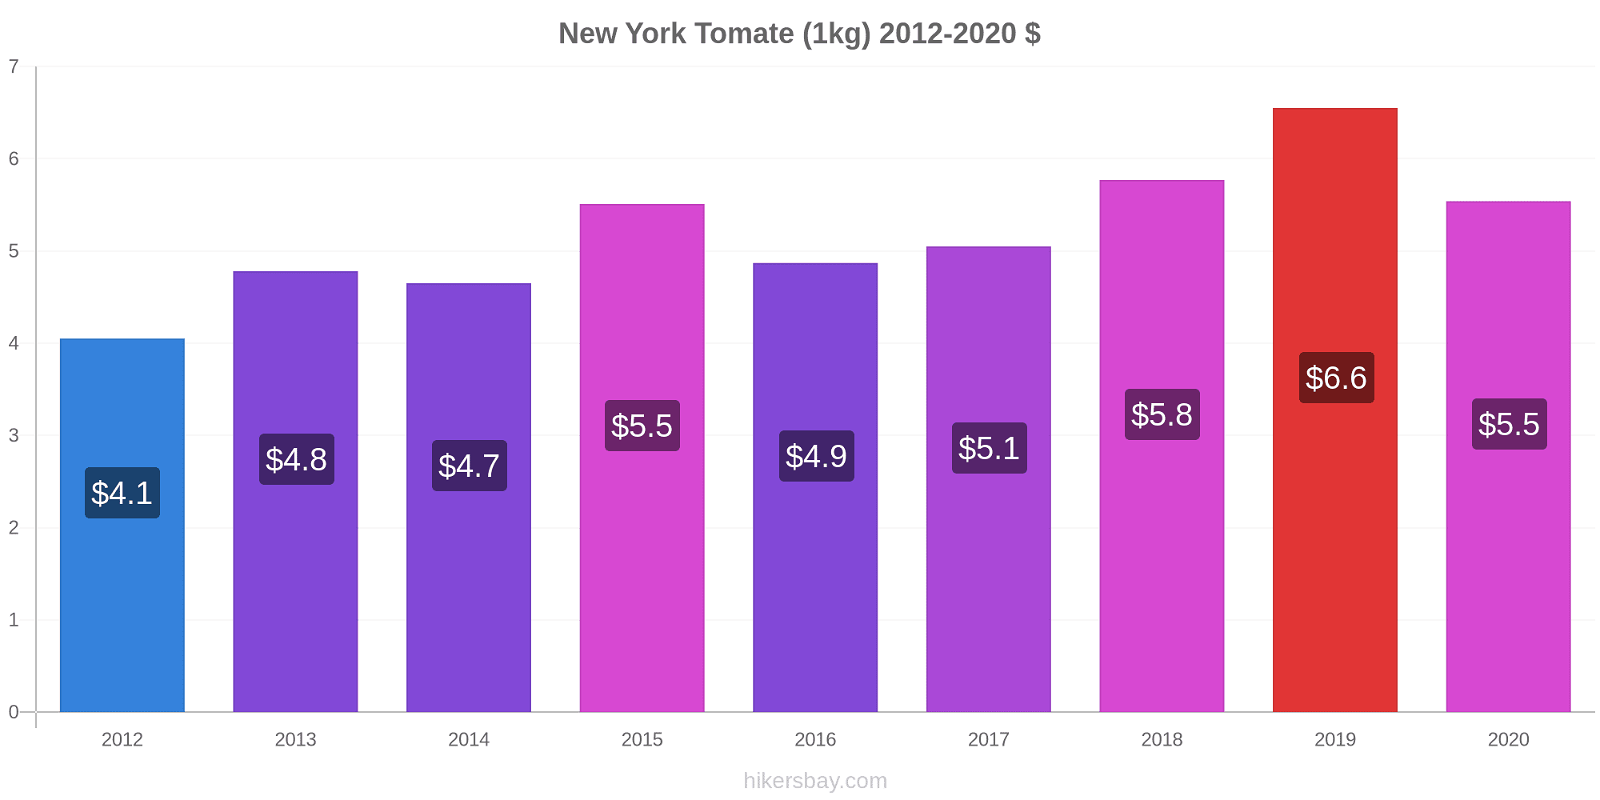 New York changements de prix Tomate (1kg) hikersbay.com